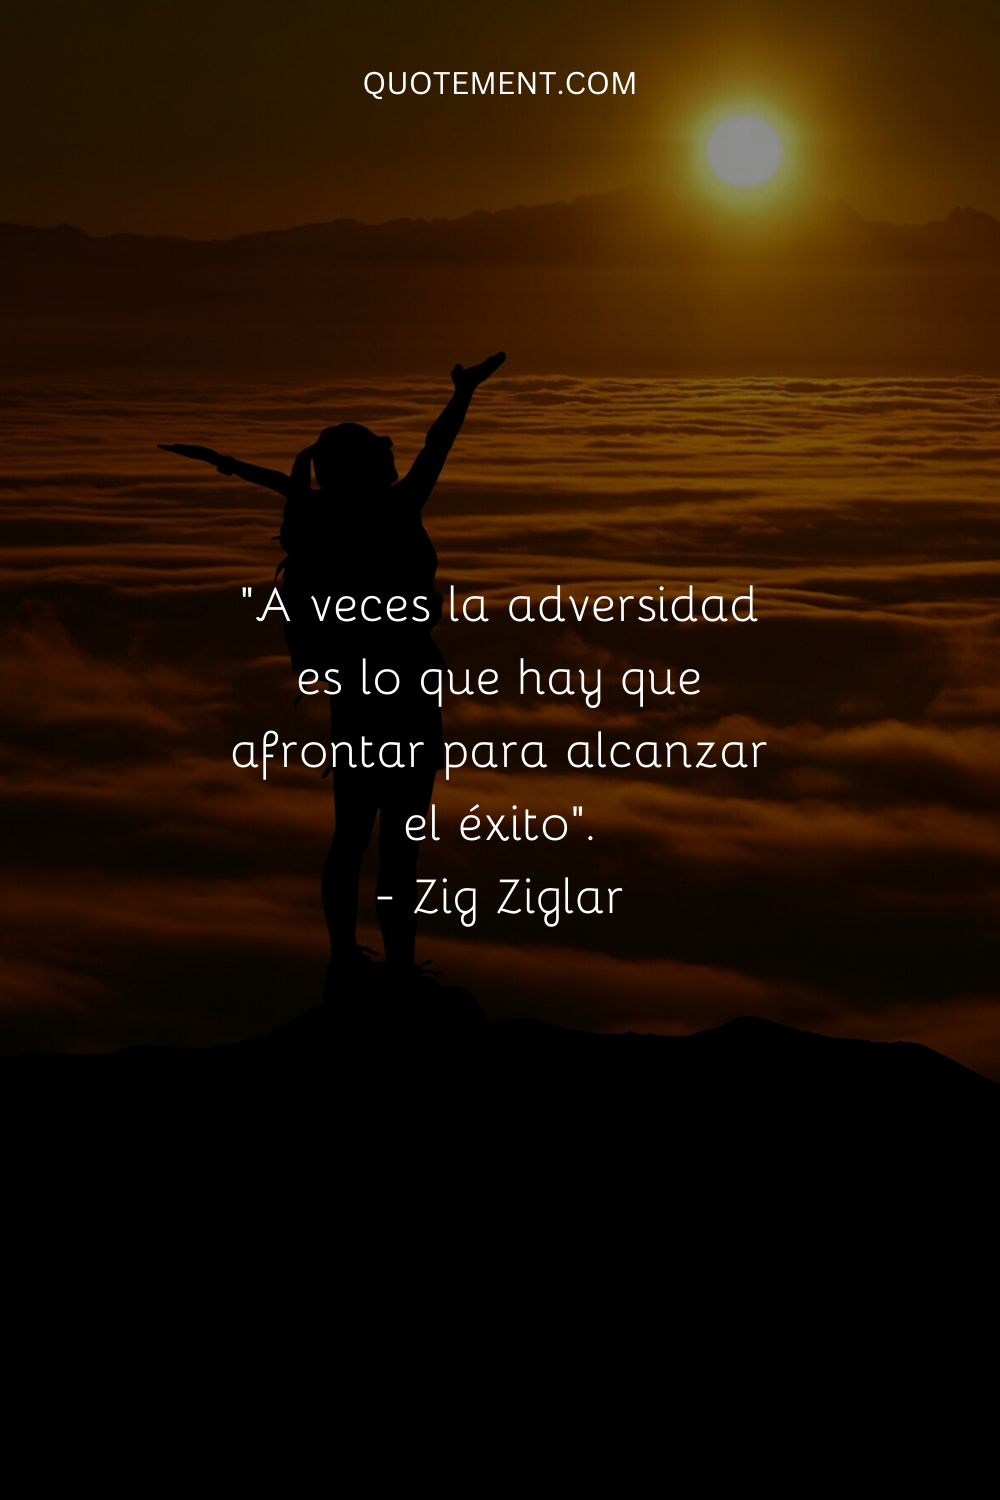 A veces hay que enfrentarse a la adversidad para tener éxito. - Zig Ziglar